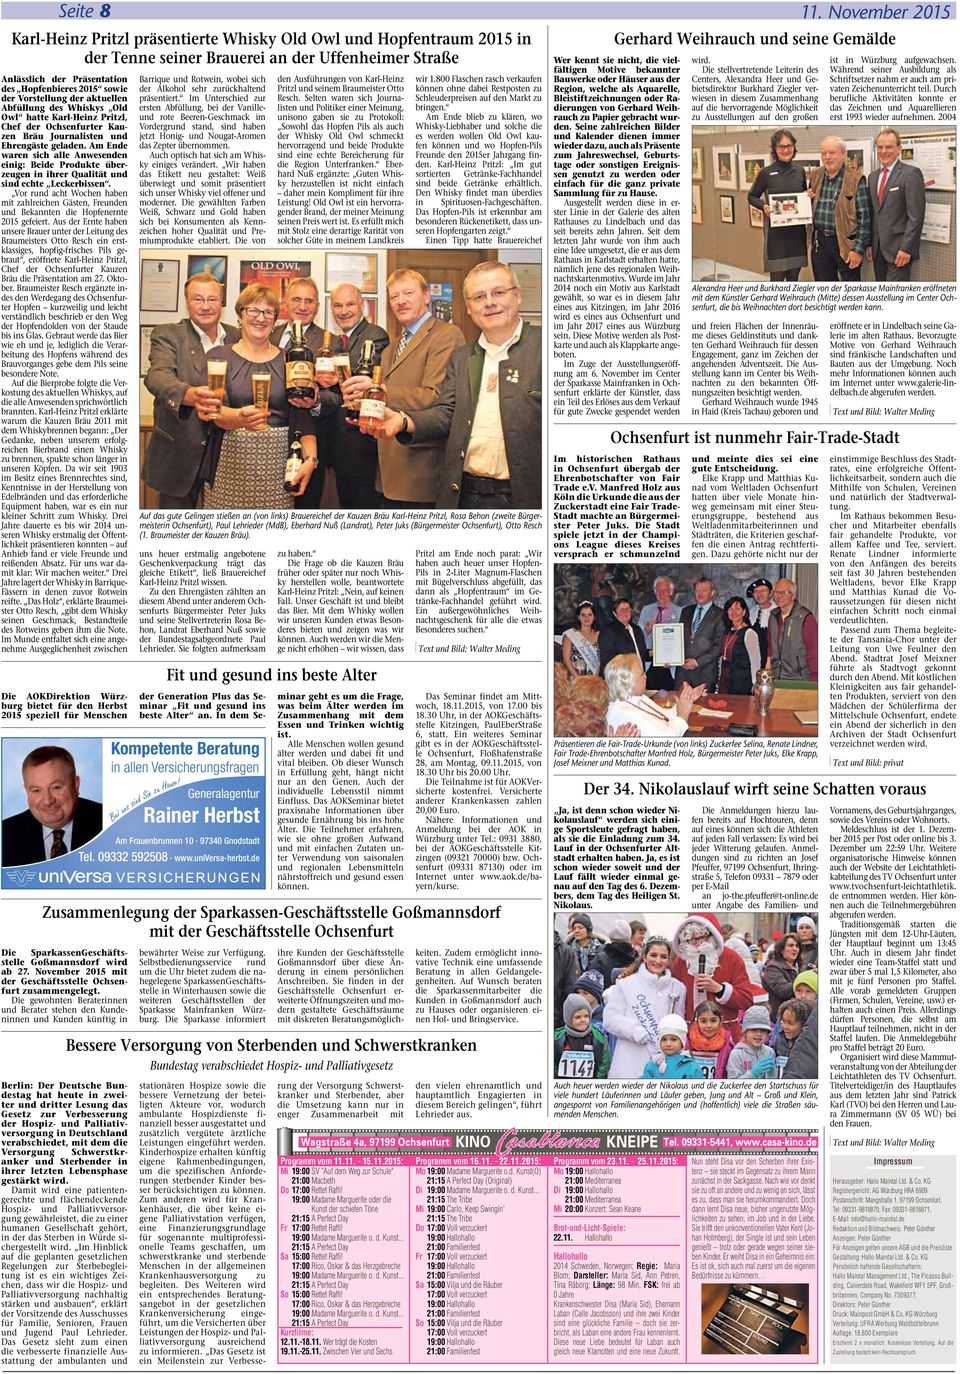 des Hopfenbieres 2015 sowie der Vorstellung der aktuellen Abfüllung des Whiskys Old Owl hatte Karl-Heinz Pritzl, Chef der Ochsenfurter Kauzen Bräu Journalisten und Ehrengäste geladen.